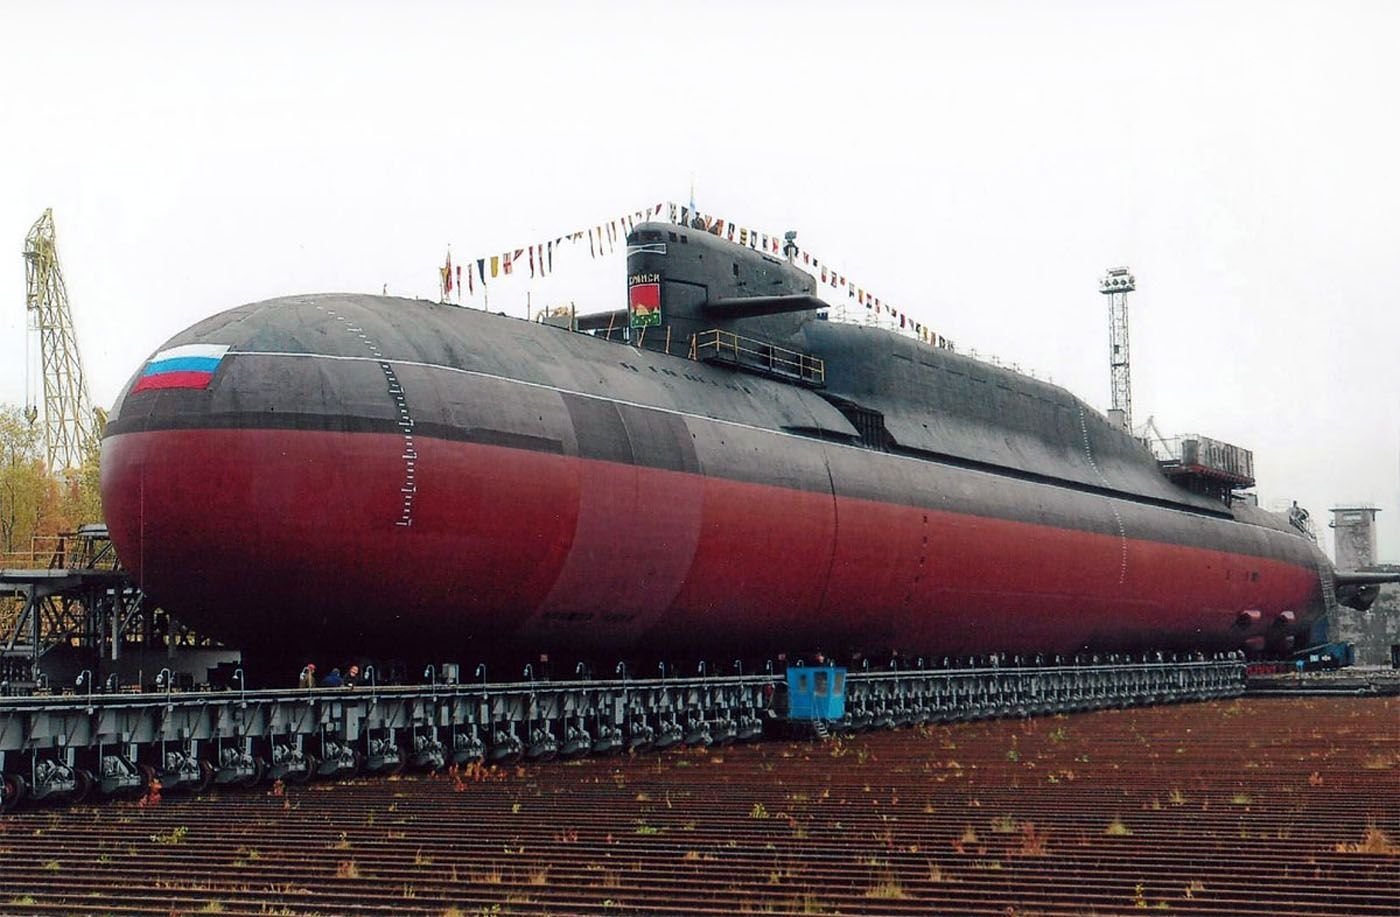 Пл материал. Подводная лодка 667бдрм "Дельфин". 667 БДРМ подводная лодка. Проект 667 БДРМ Дельфин. АПЛ 667бдрм Дельфин Новомосковск.